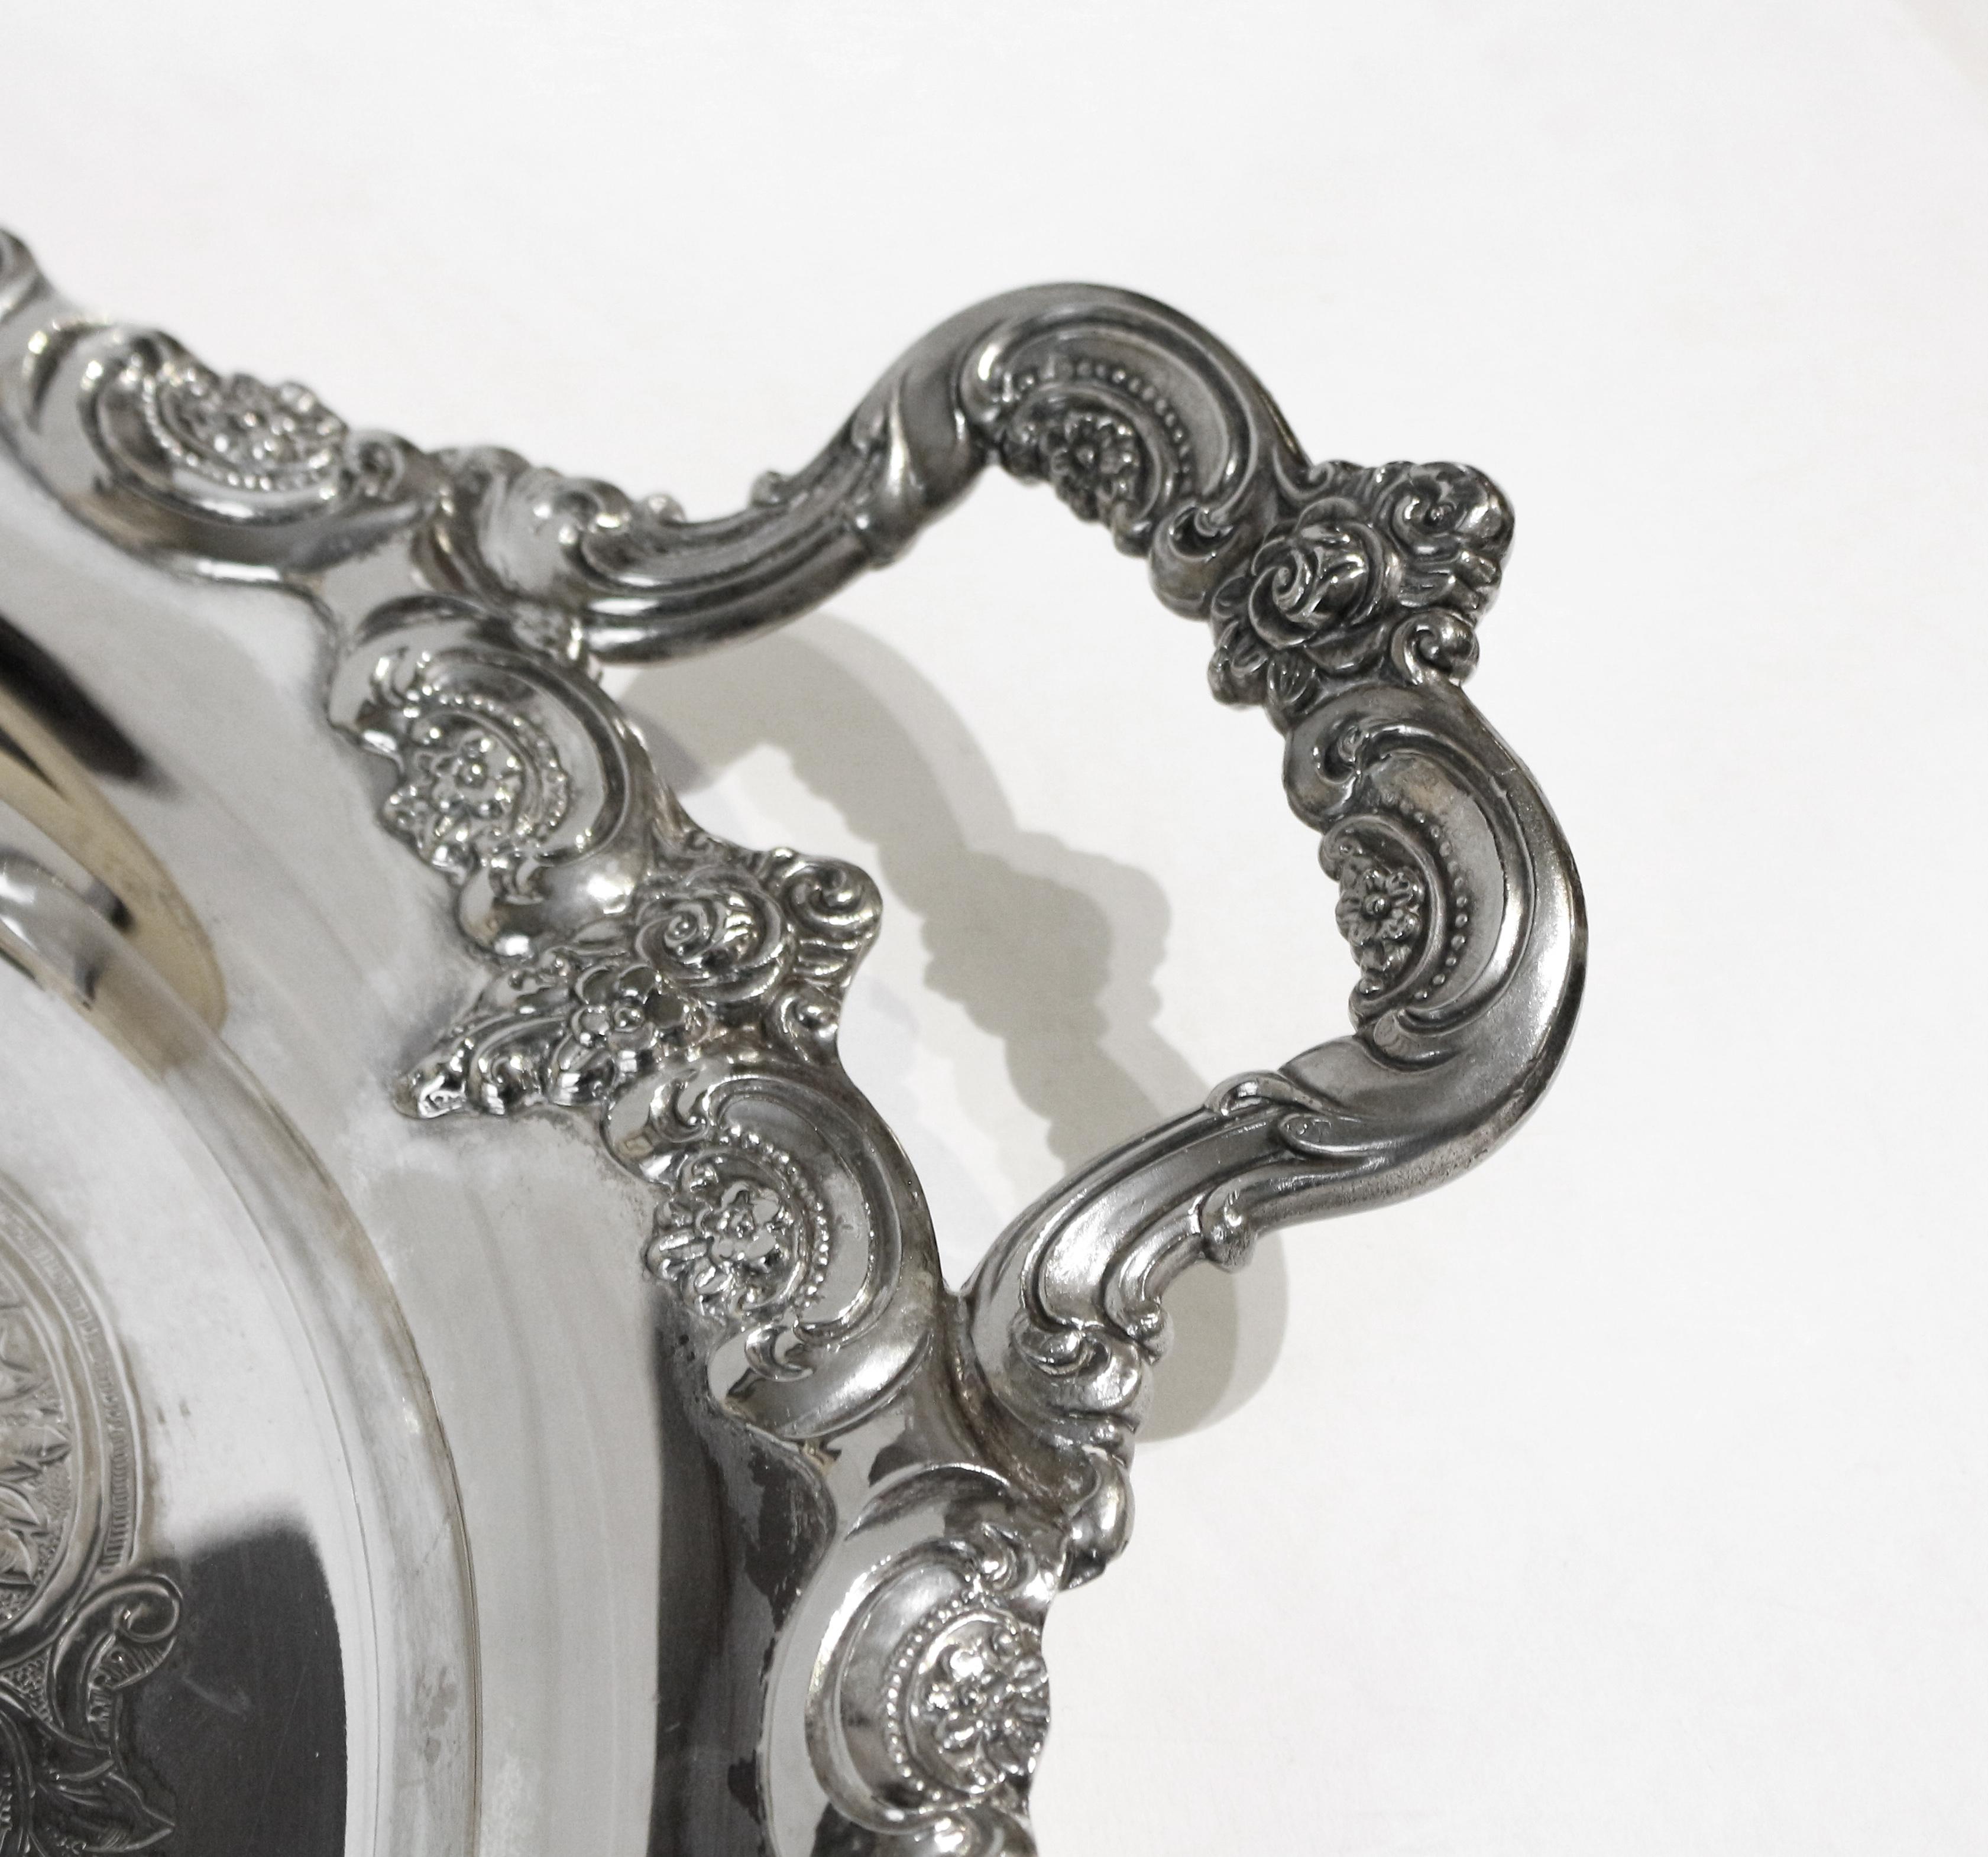 Ovales Teetablett im Rokoko-Stil, Silberplatte von Towle. Groß und elegant mit Blümchen und C-Rollen-Bordüre. Gezeichnet 